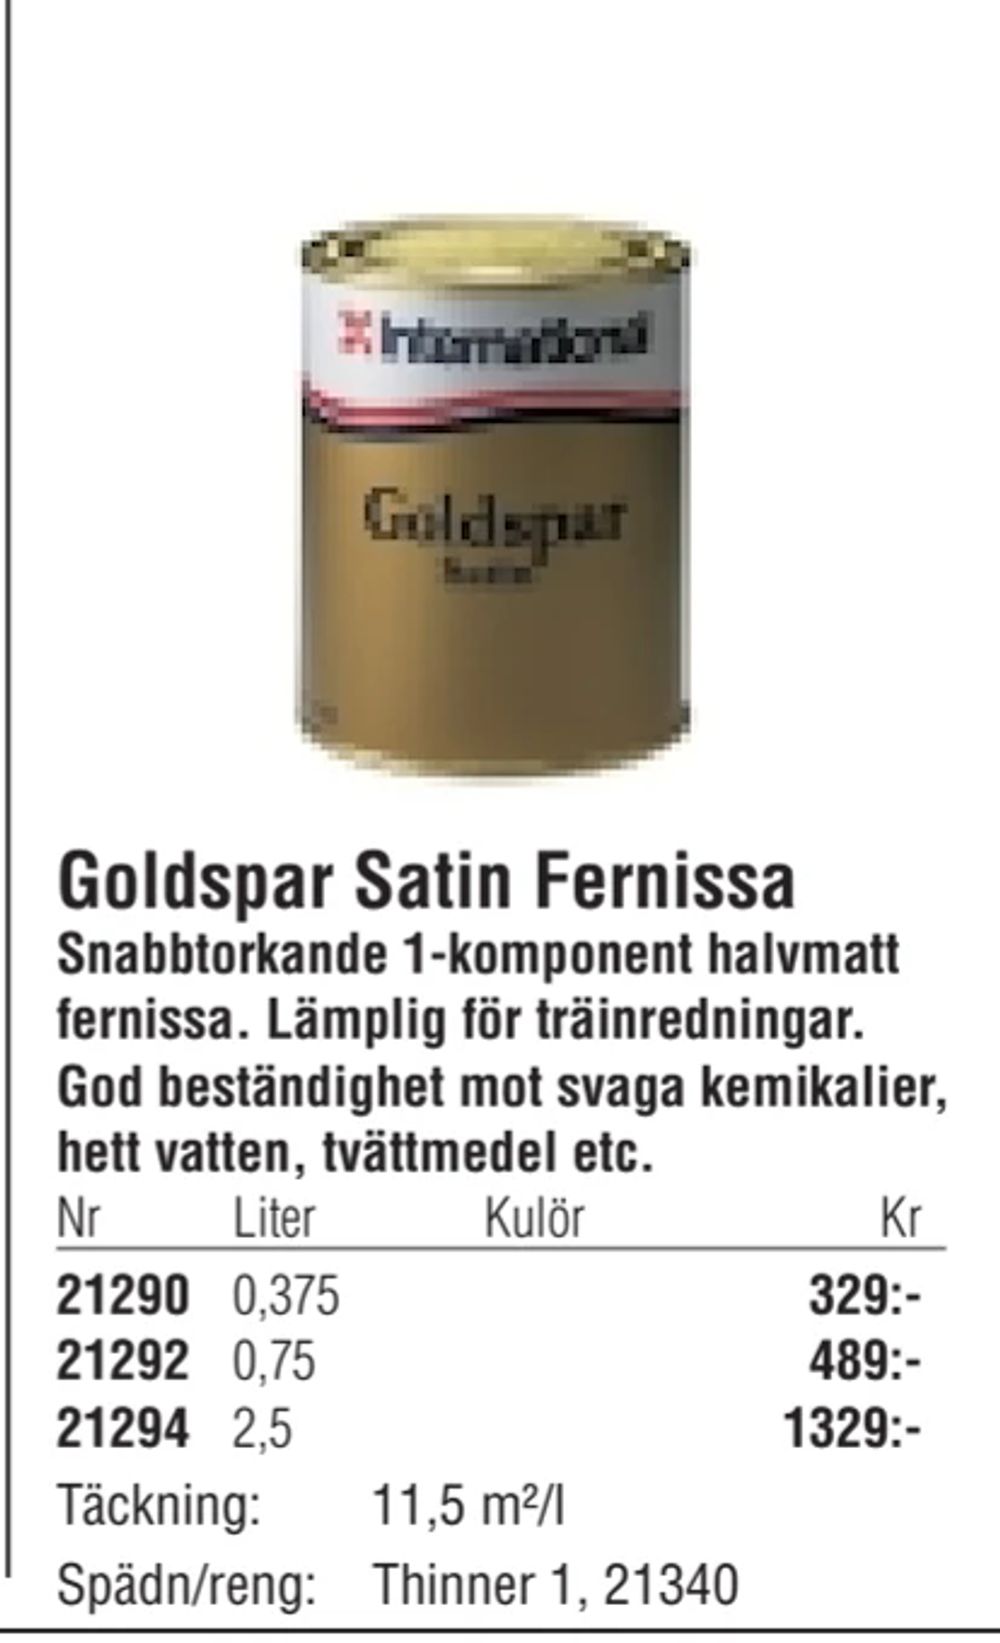 Erbjudanden på Goldspar Satin Fernissa från Erlandsons Brygga för 329 kr